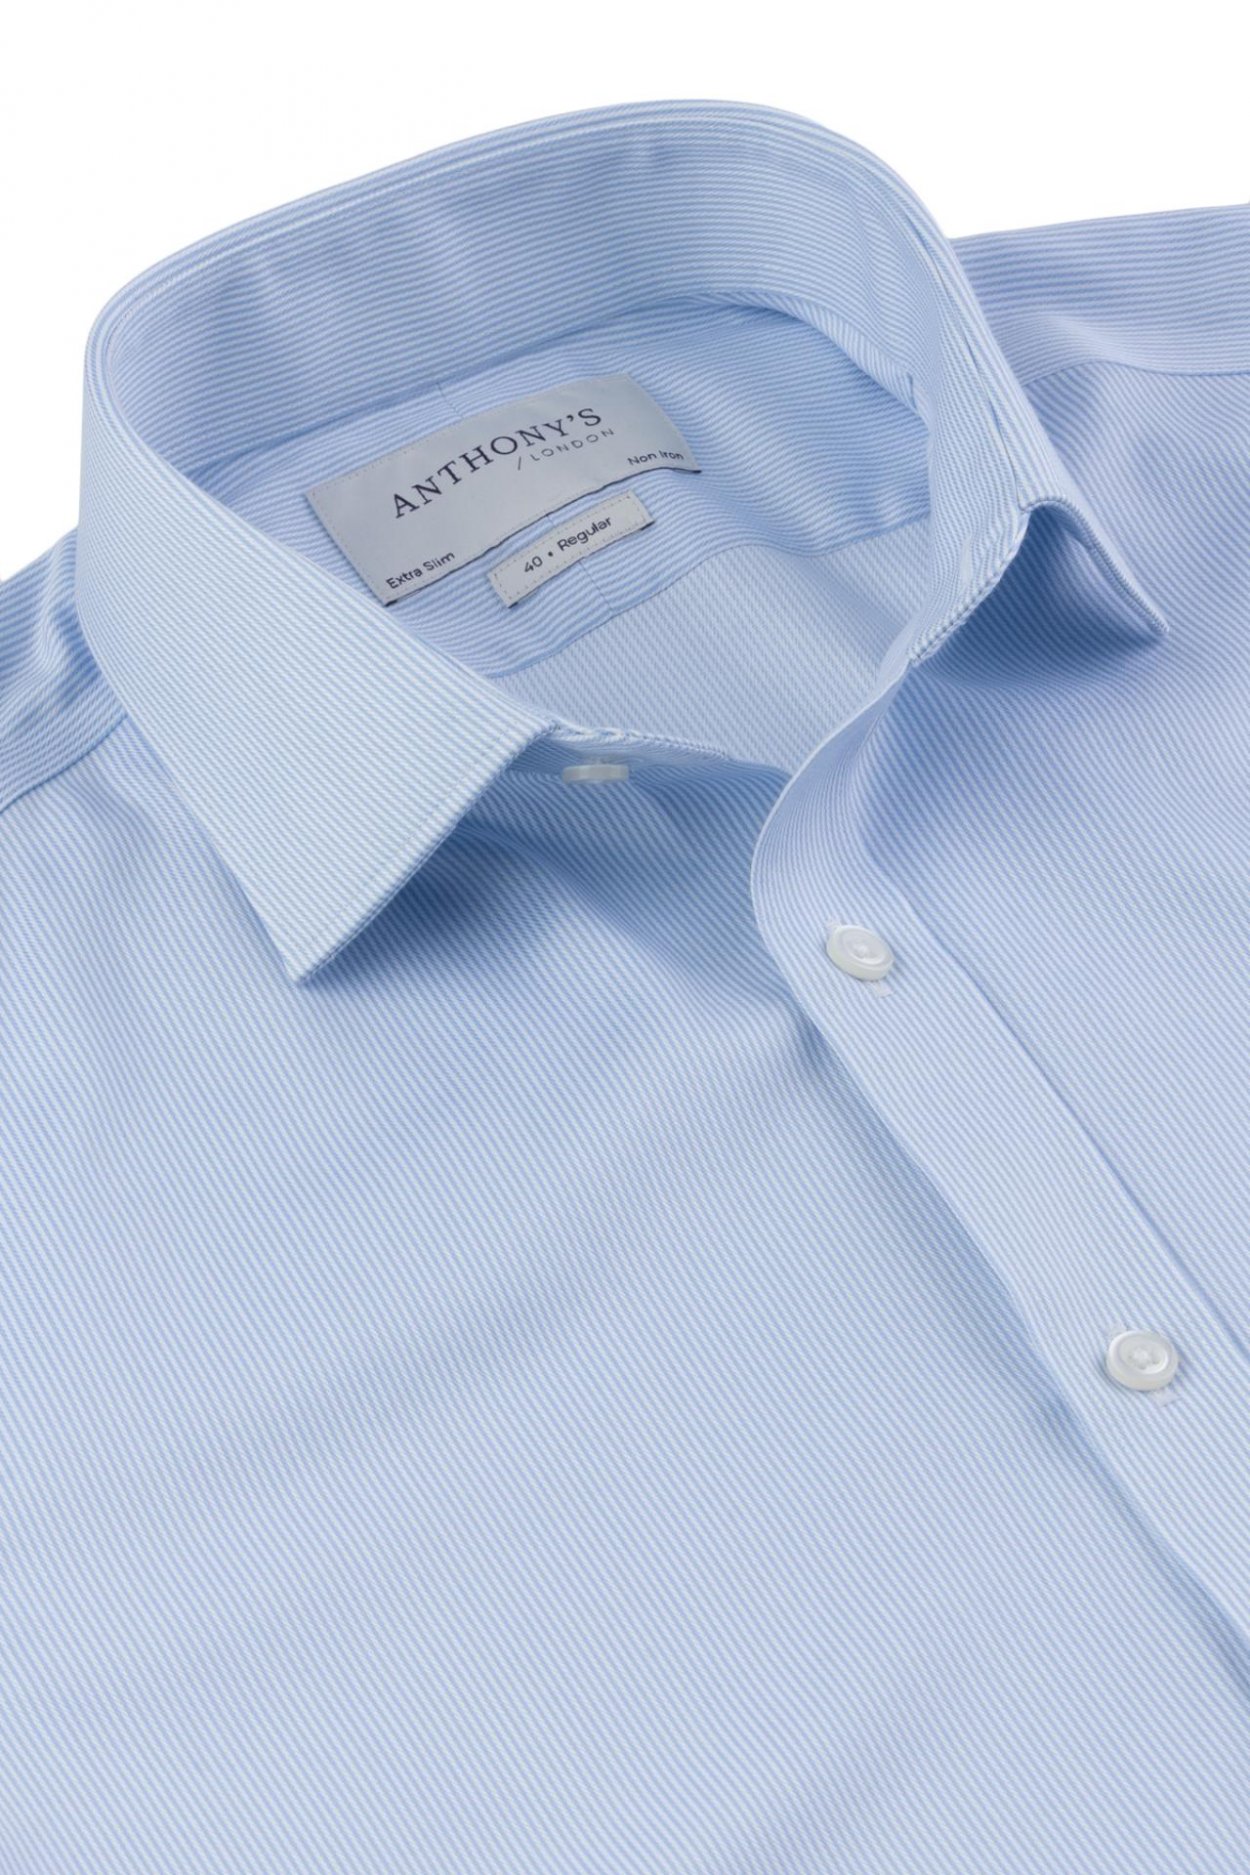 Pánská modrá non-iron košile s jemným proužkem na manžetové knoflíčky